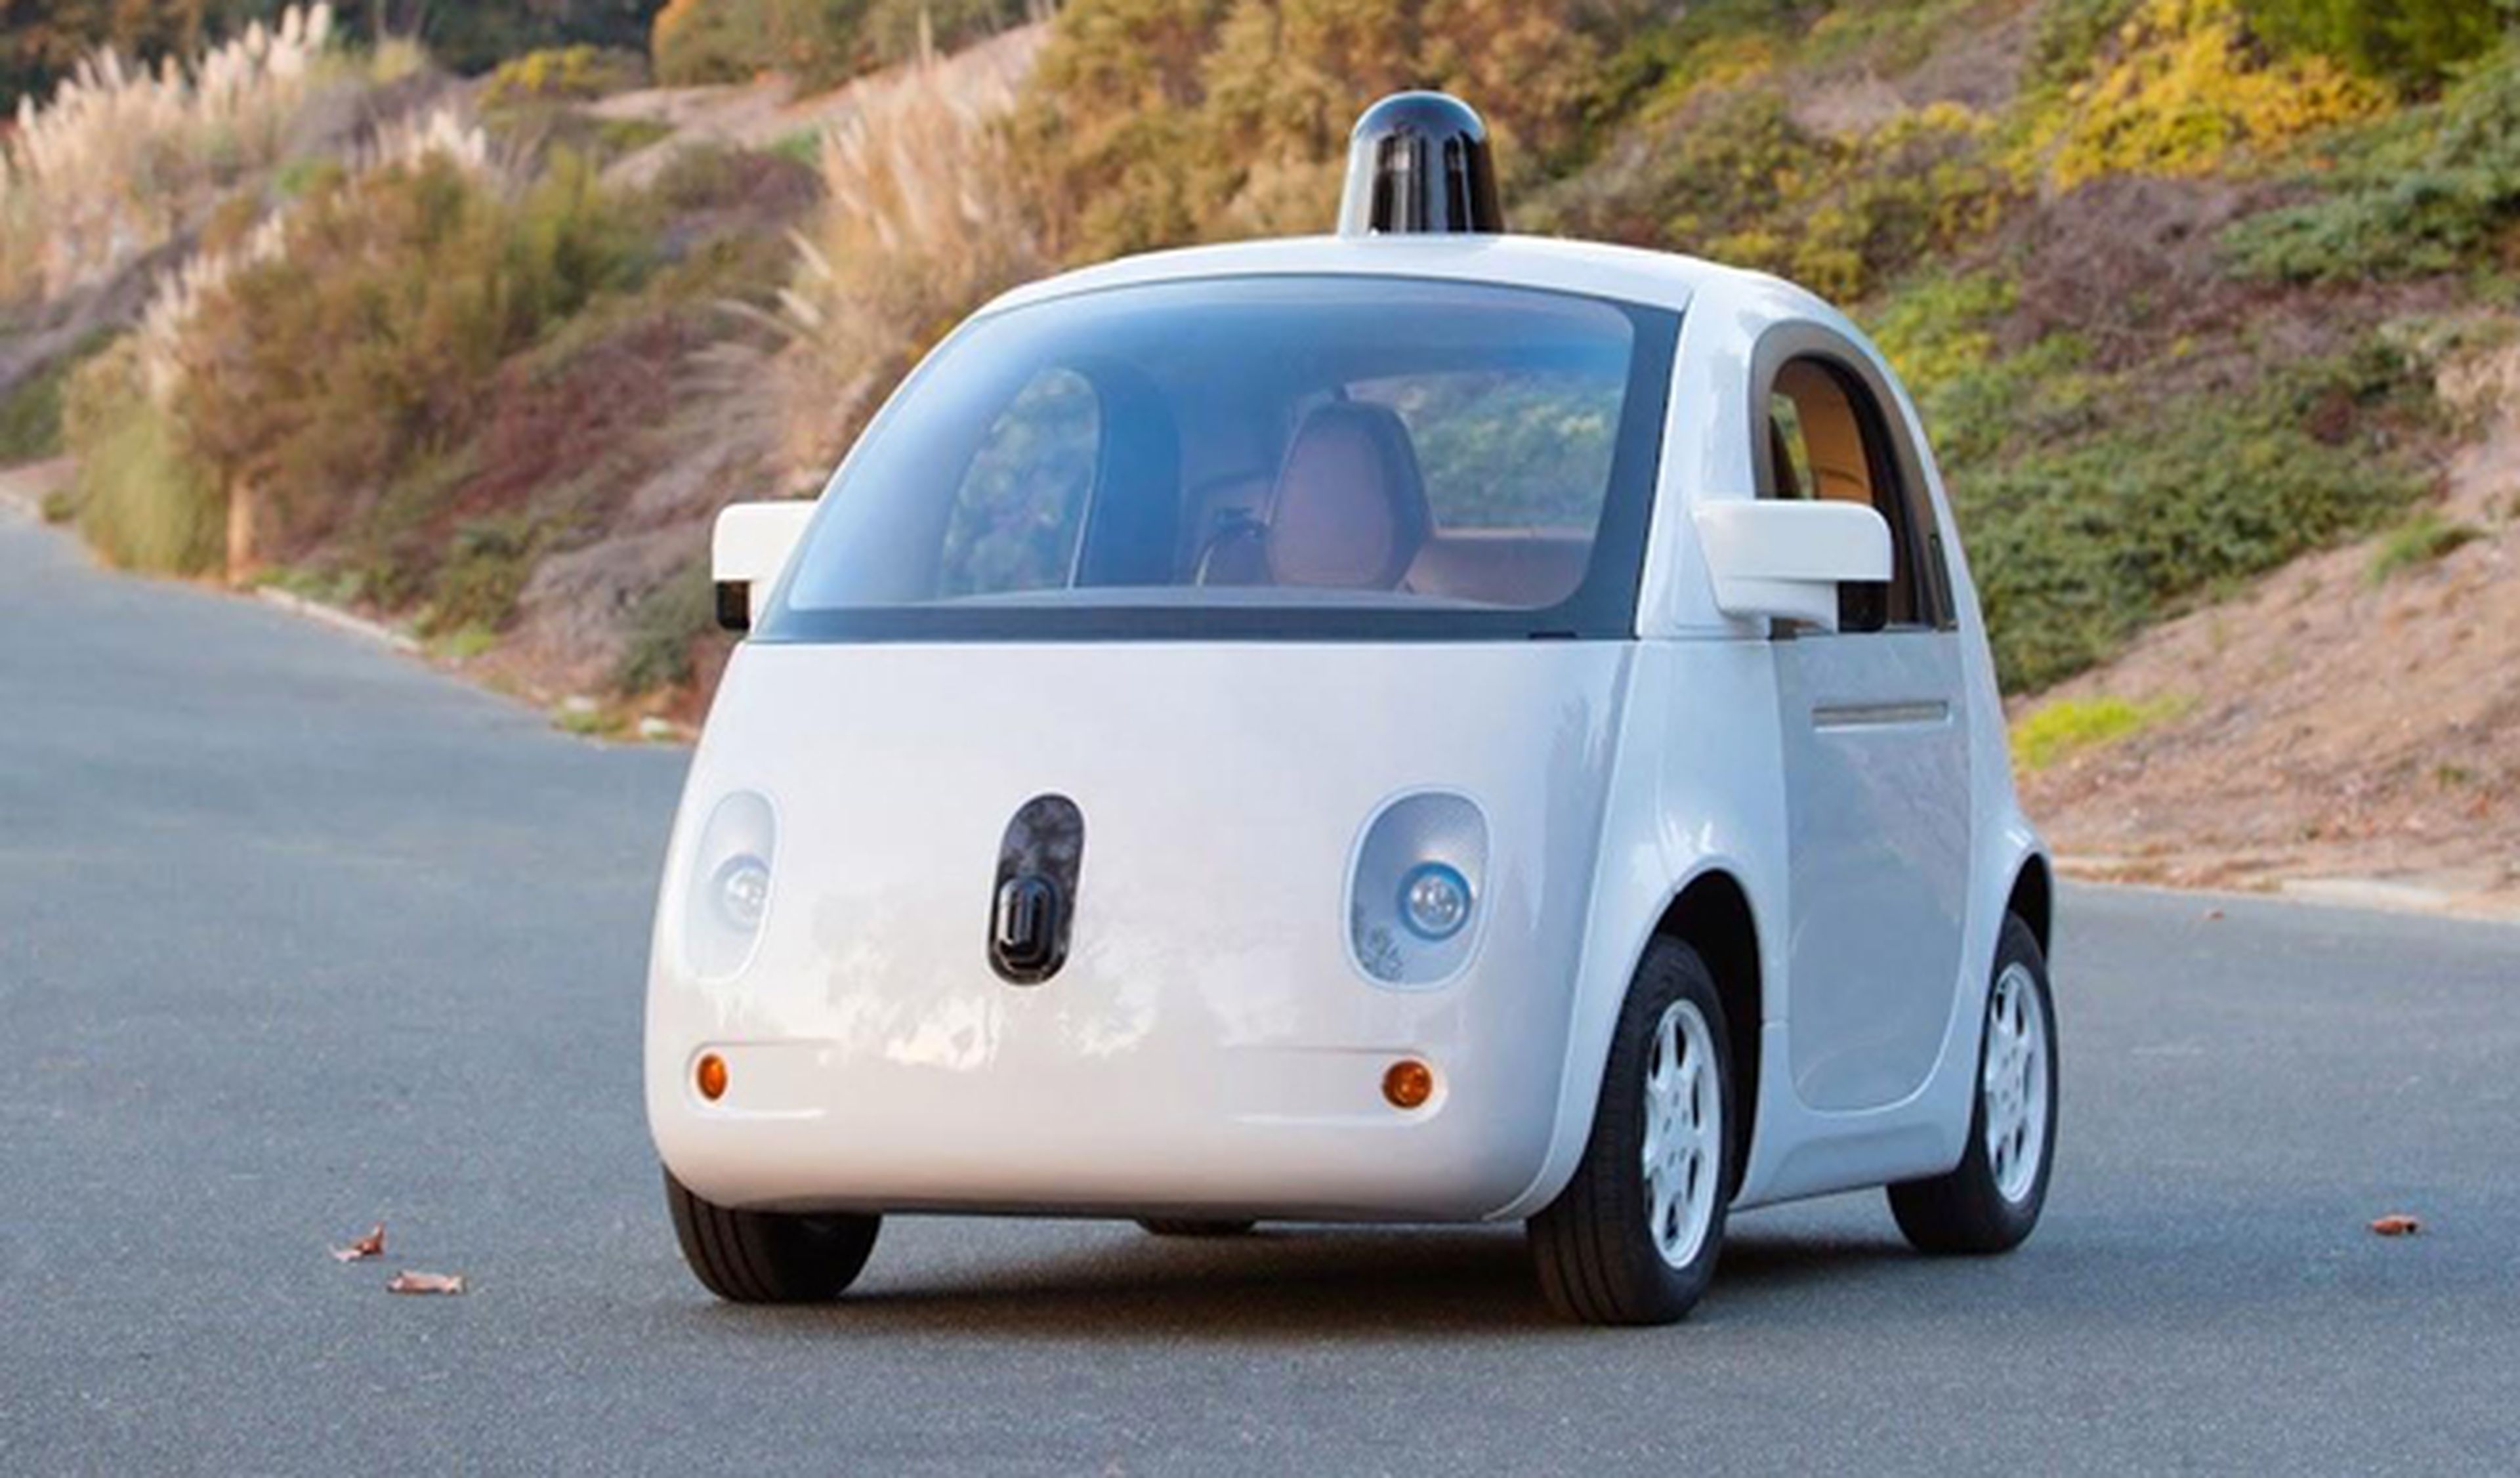 El coche de Google, en su versión definitiva de producción